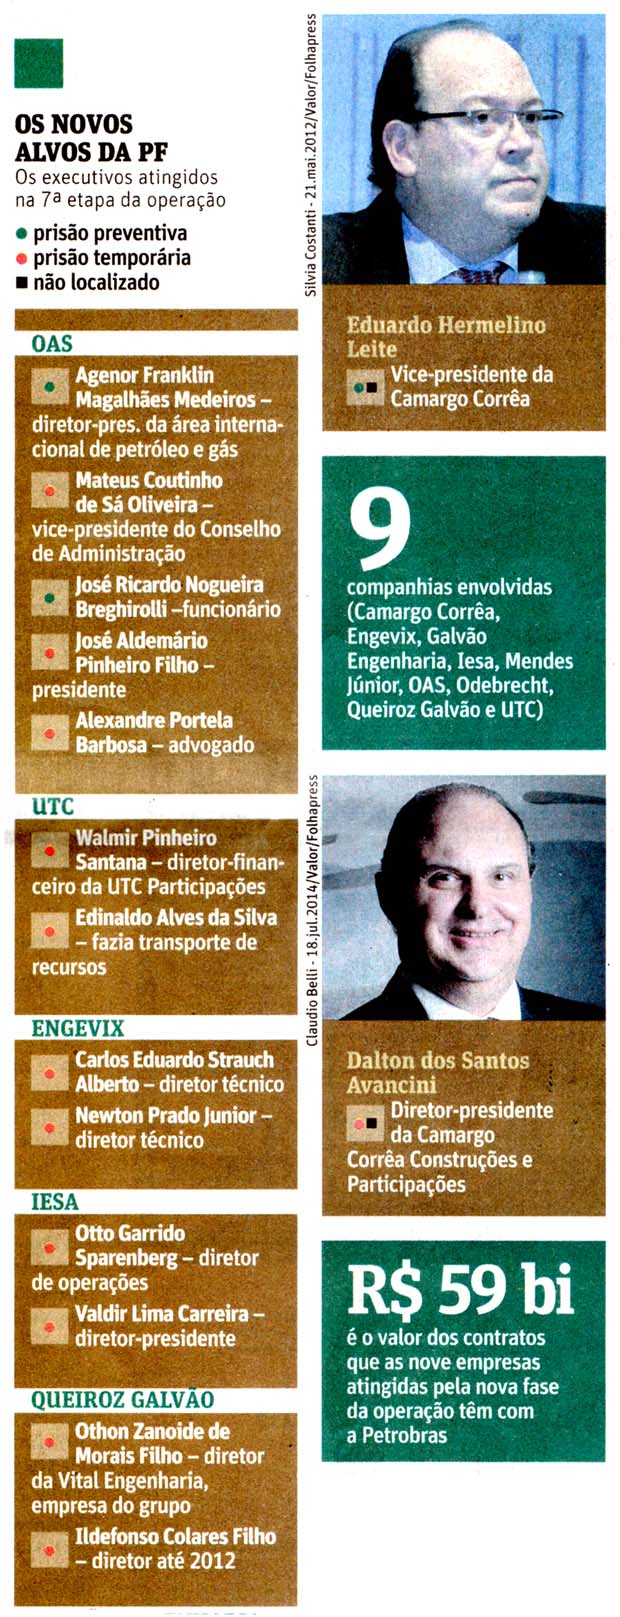 Folha de So Paulo - 15/11/14 - Petrobras: Execcutivos de empreiteiras para a cadeia - Folhapress